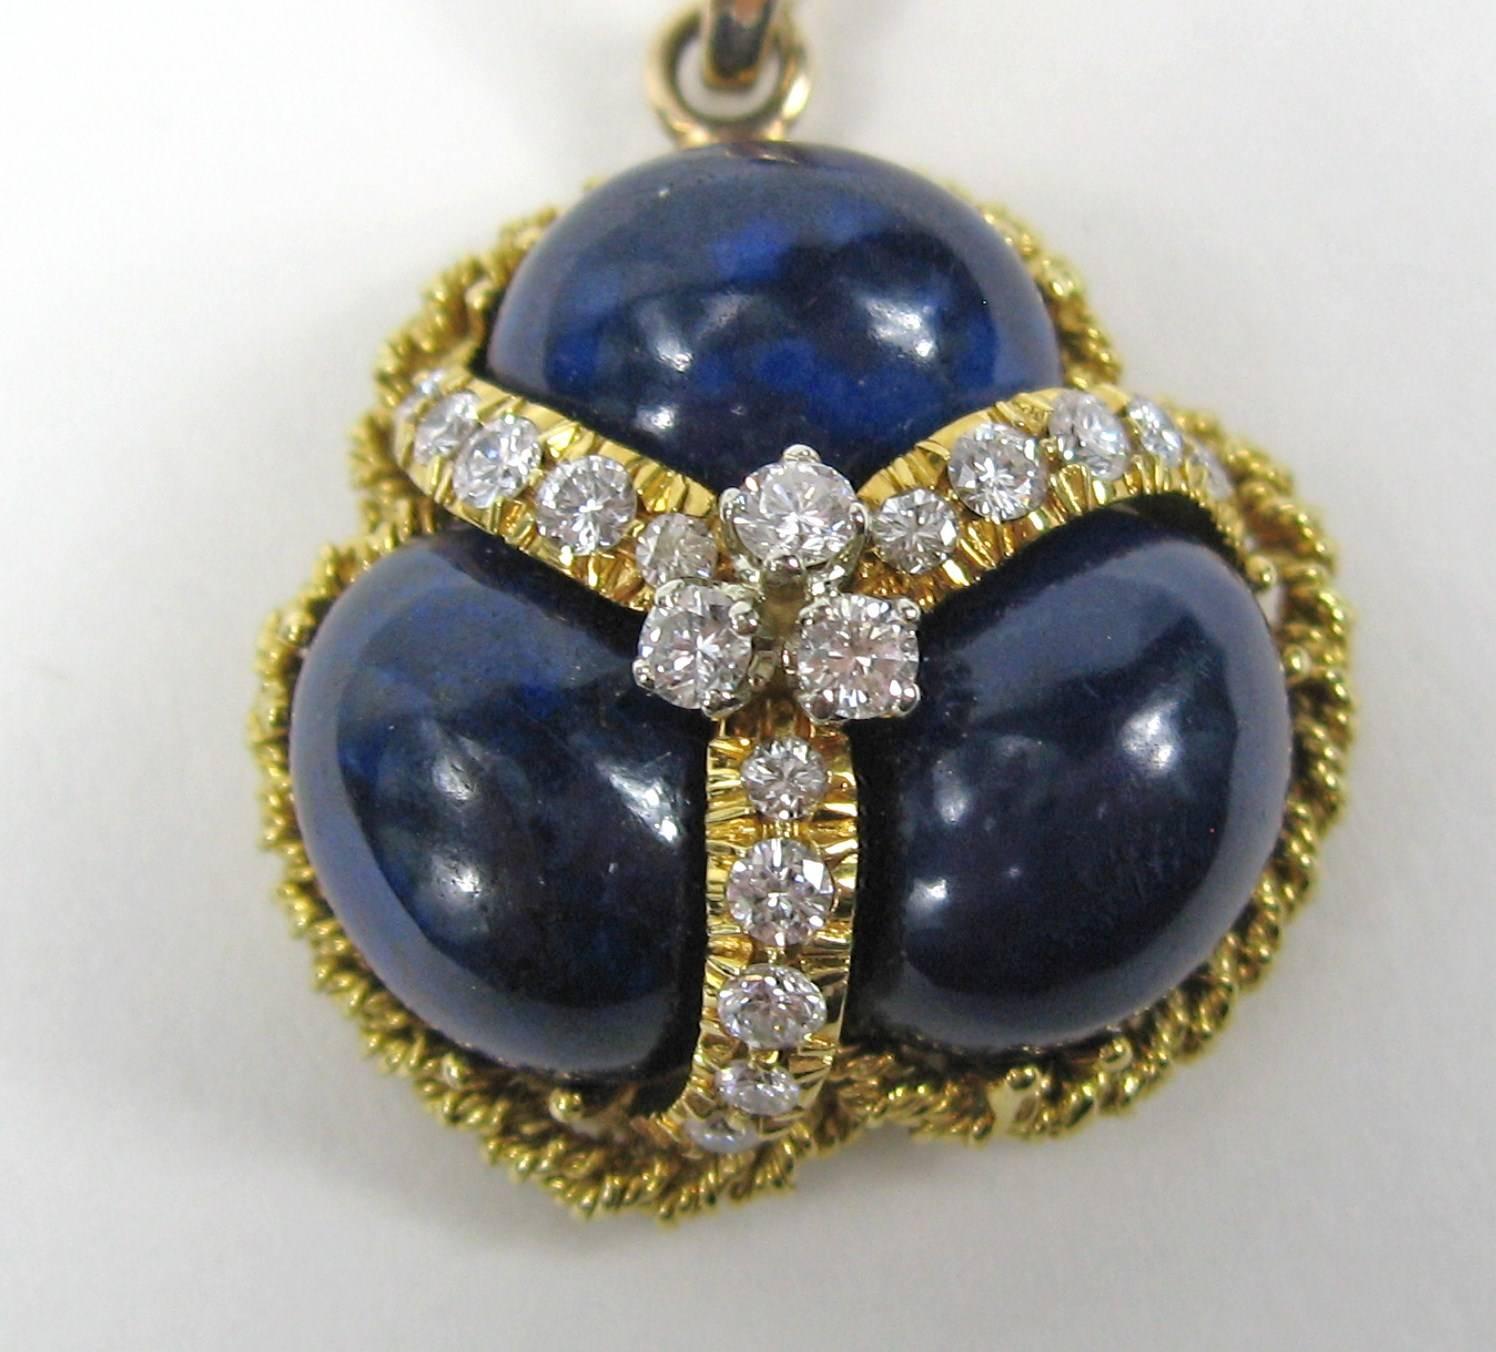 pendentif en or 14K en forme de Lapis Lazuli avec 1 carat de diamants accentués de taille brillante entourant les 3 pièces de Lapis. La chaîne est une combinaison de corde et de maillon, très inhabituelle - 0,86 pouce de haut en bas (sans inclure la